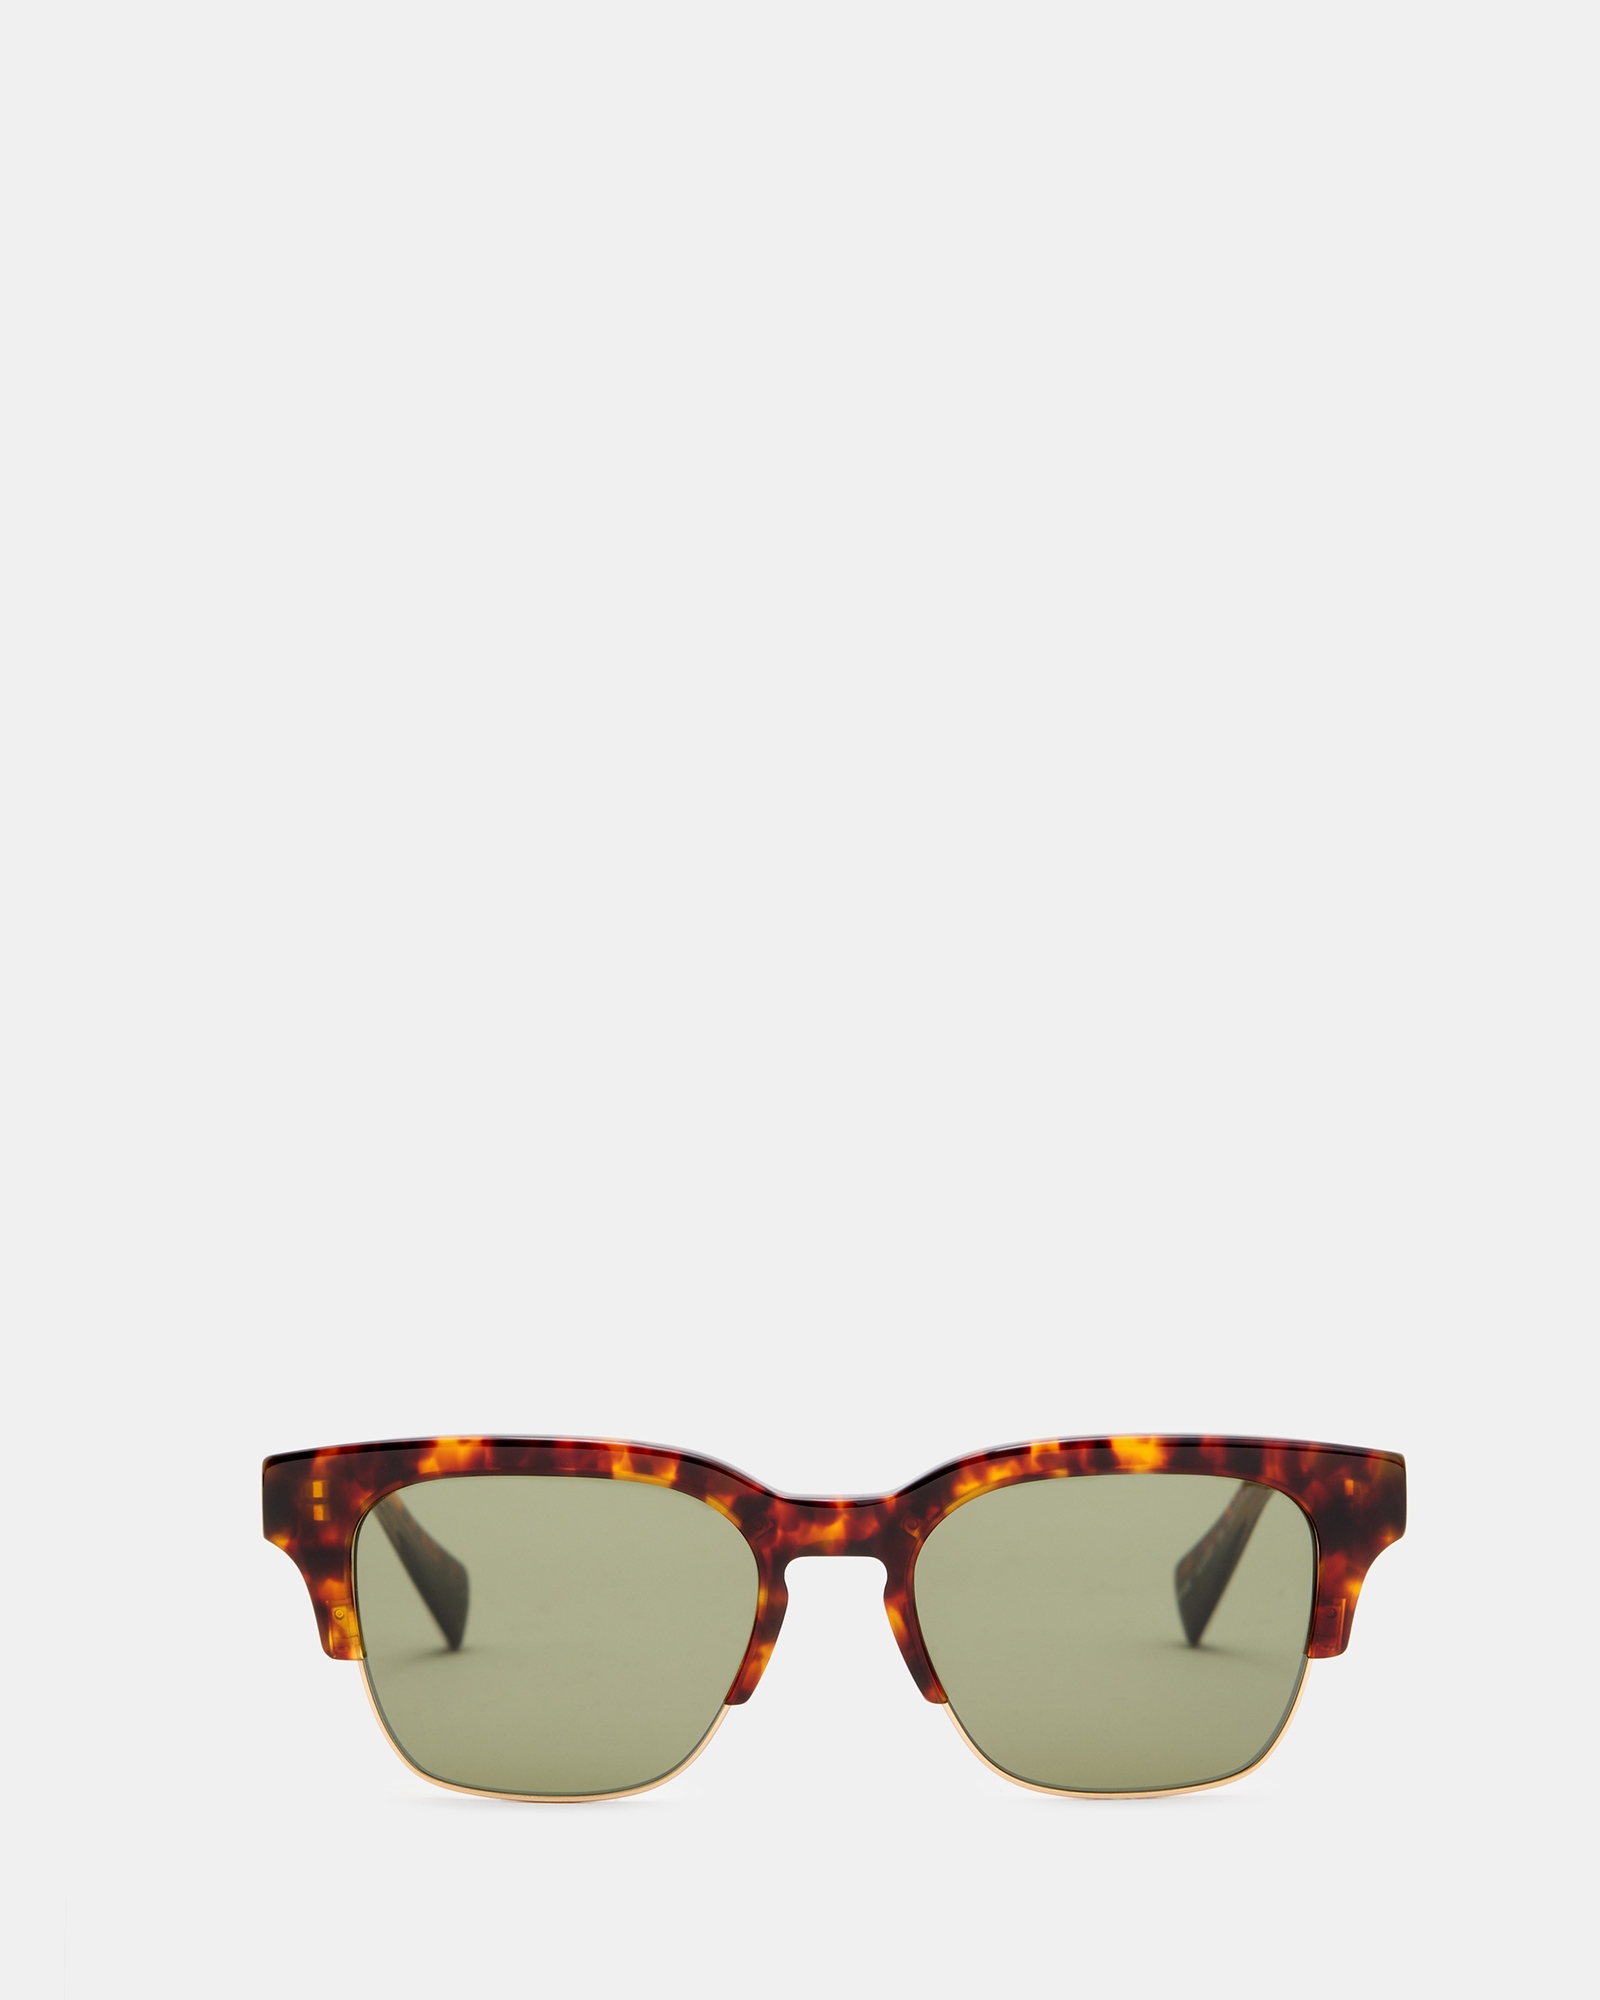 AllSaints Zinner Retro Square Sunglasses,, CLASSIC TORT